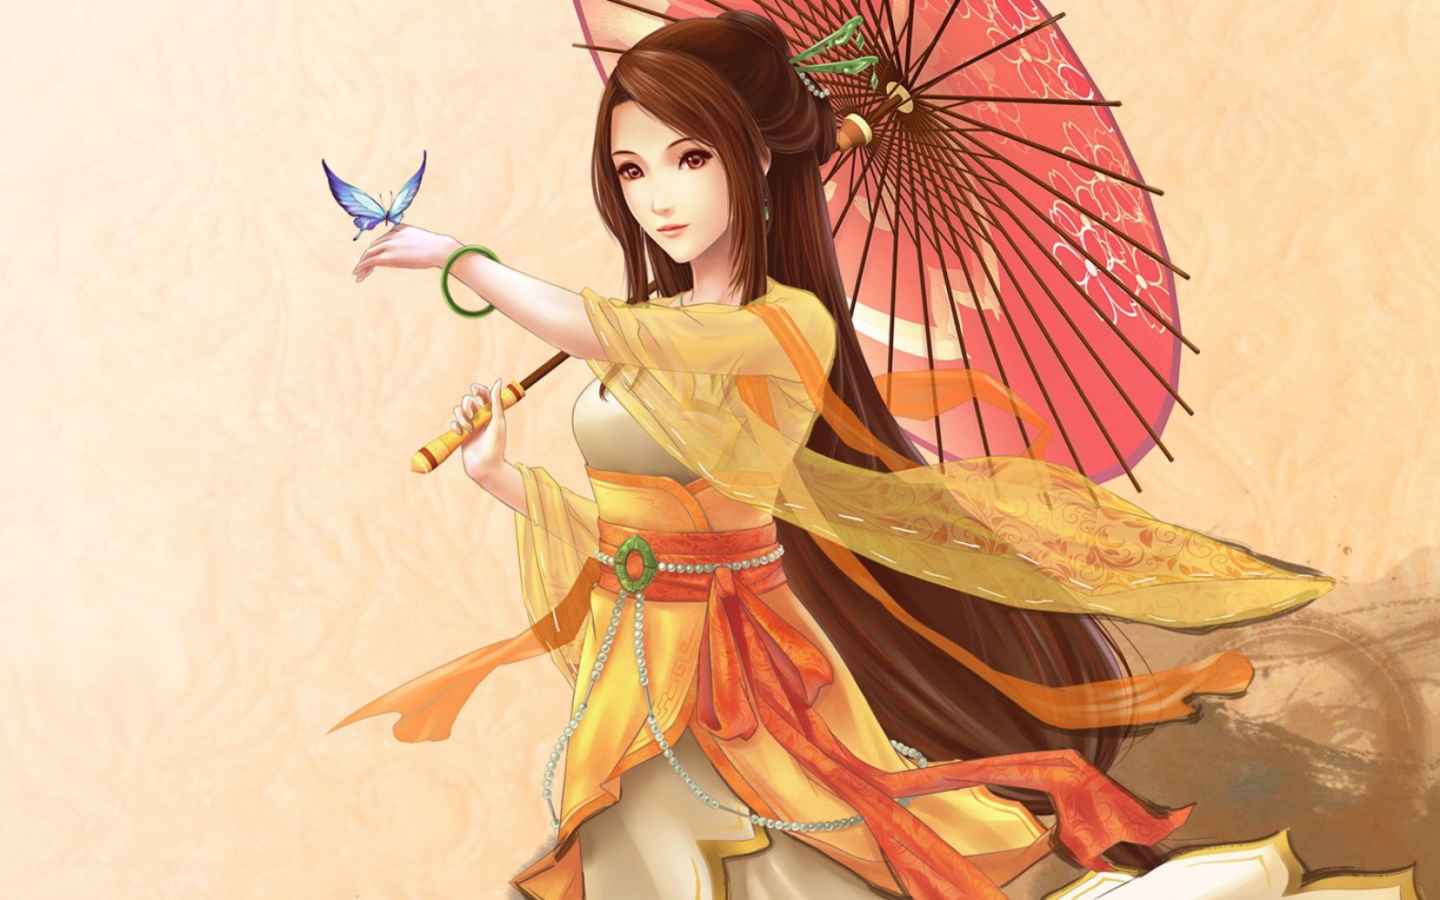 Das Japanese Woman & Butterfly Wallpaper 1440x900